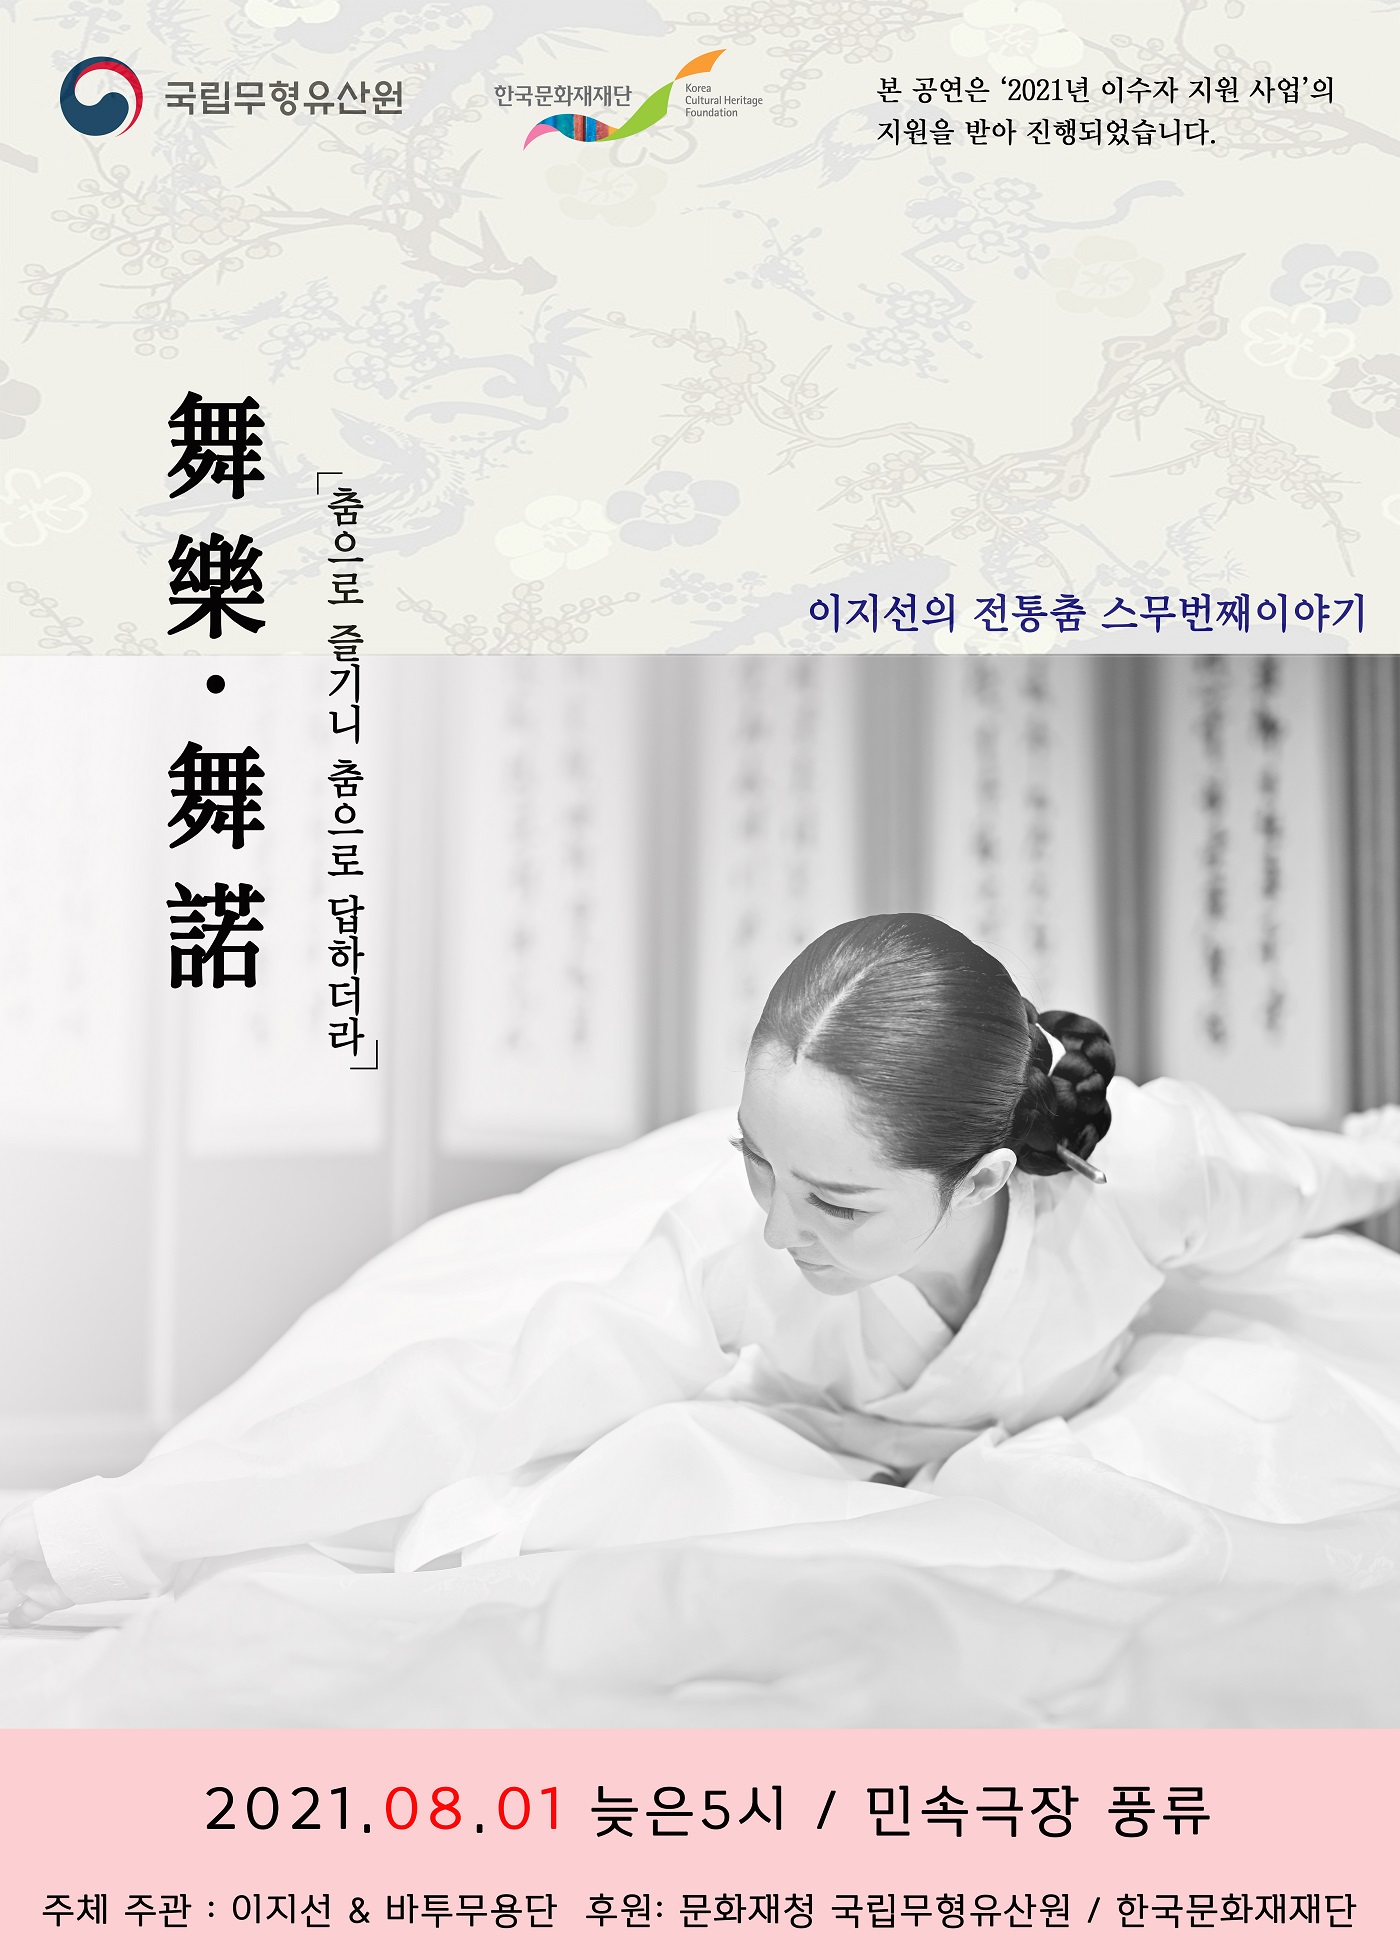  국립무형유산원, 한국문화재재단 Korea Cultural Heritage Foundation 본 공연은 '2021년 이수자 지원 사업'의 지원을 받아 진행되었습니다. 舞樂·舞諾 「춤으로 즐기니 춤으로 답하더라」 이지선의 전통춤 스무번째이야기 (자세한 내용 하단 참조) 